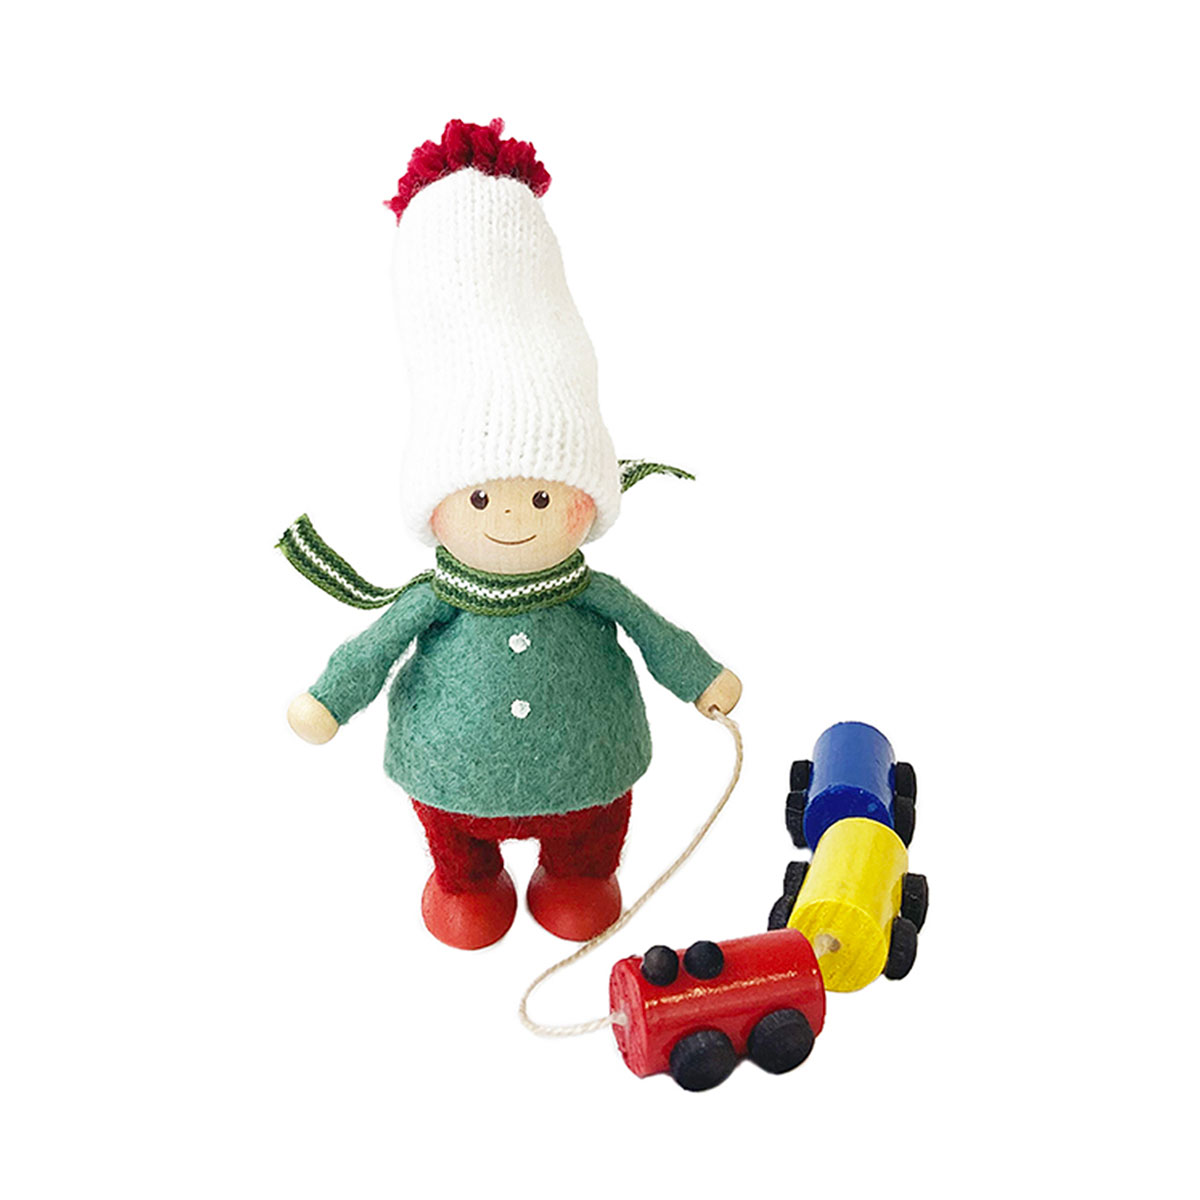 NORDIKA nisse ノルディカ ニッセ クリスマス 木製人形 ( 電車のおもちゃを運ぶ男の子 / joy to the world )